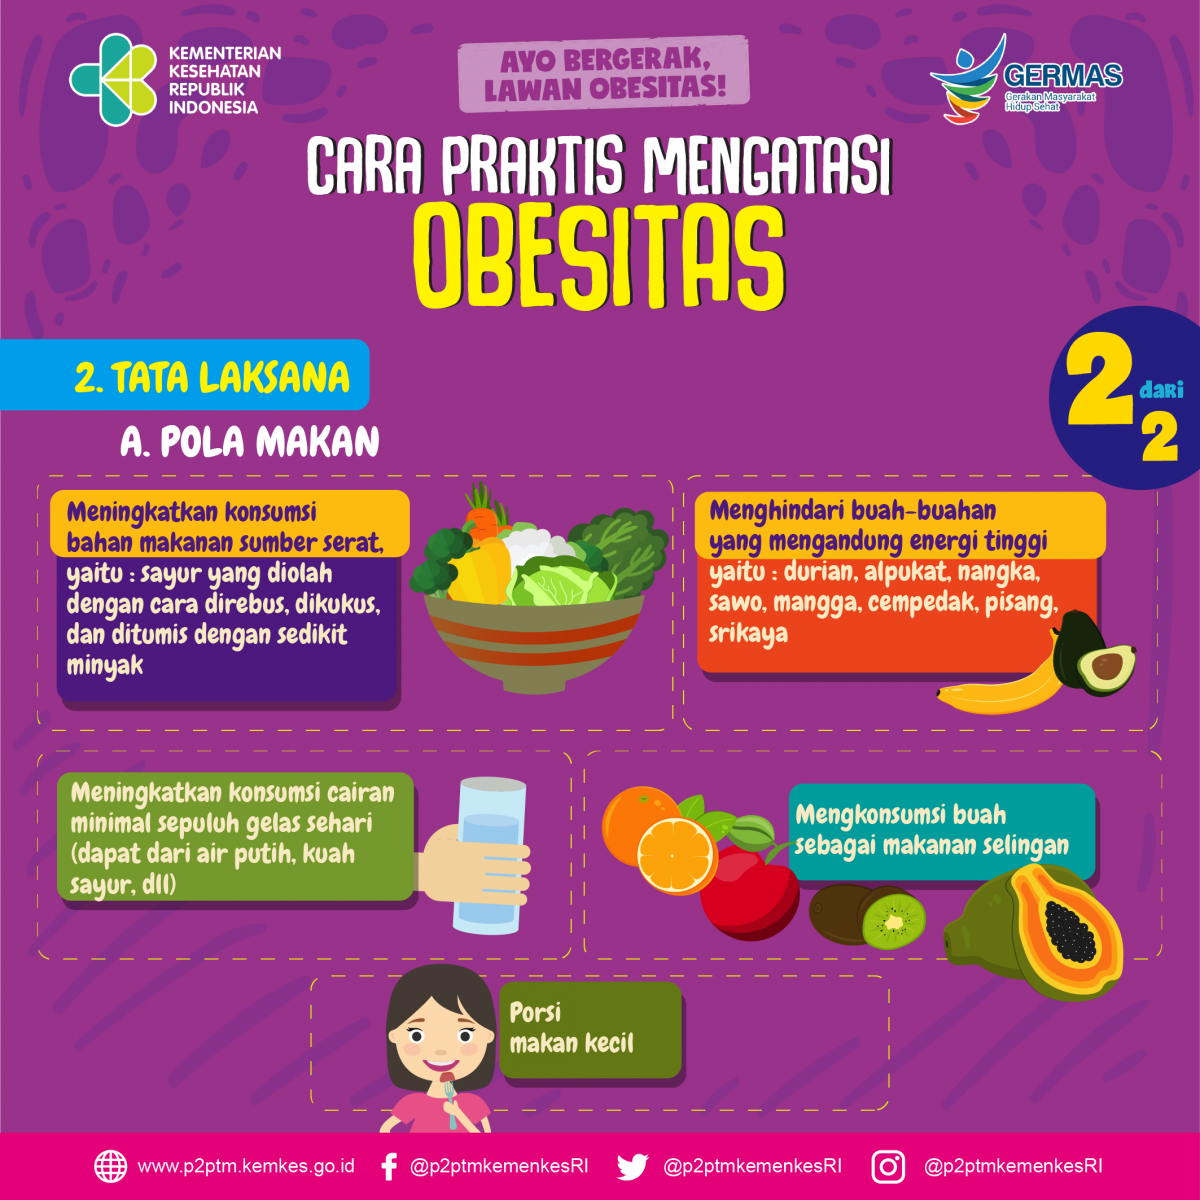 Cara Praktis Mengatasi Obesitas : Tata Laksana dari Pola Makan, Bagian 2